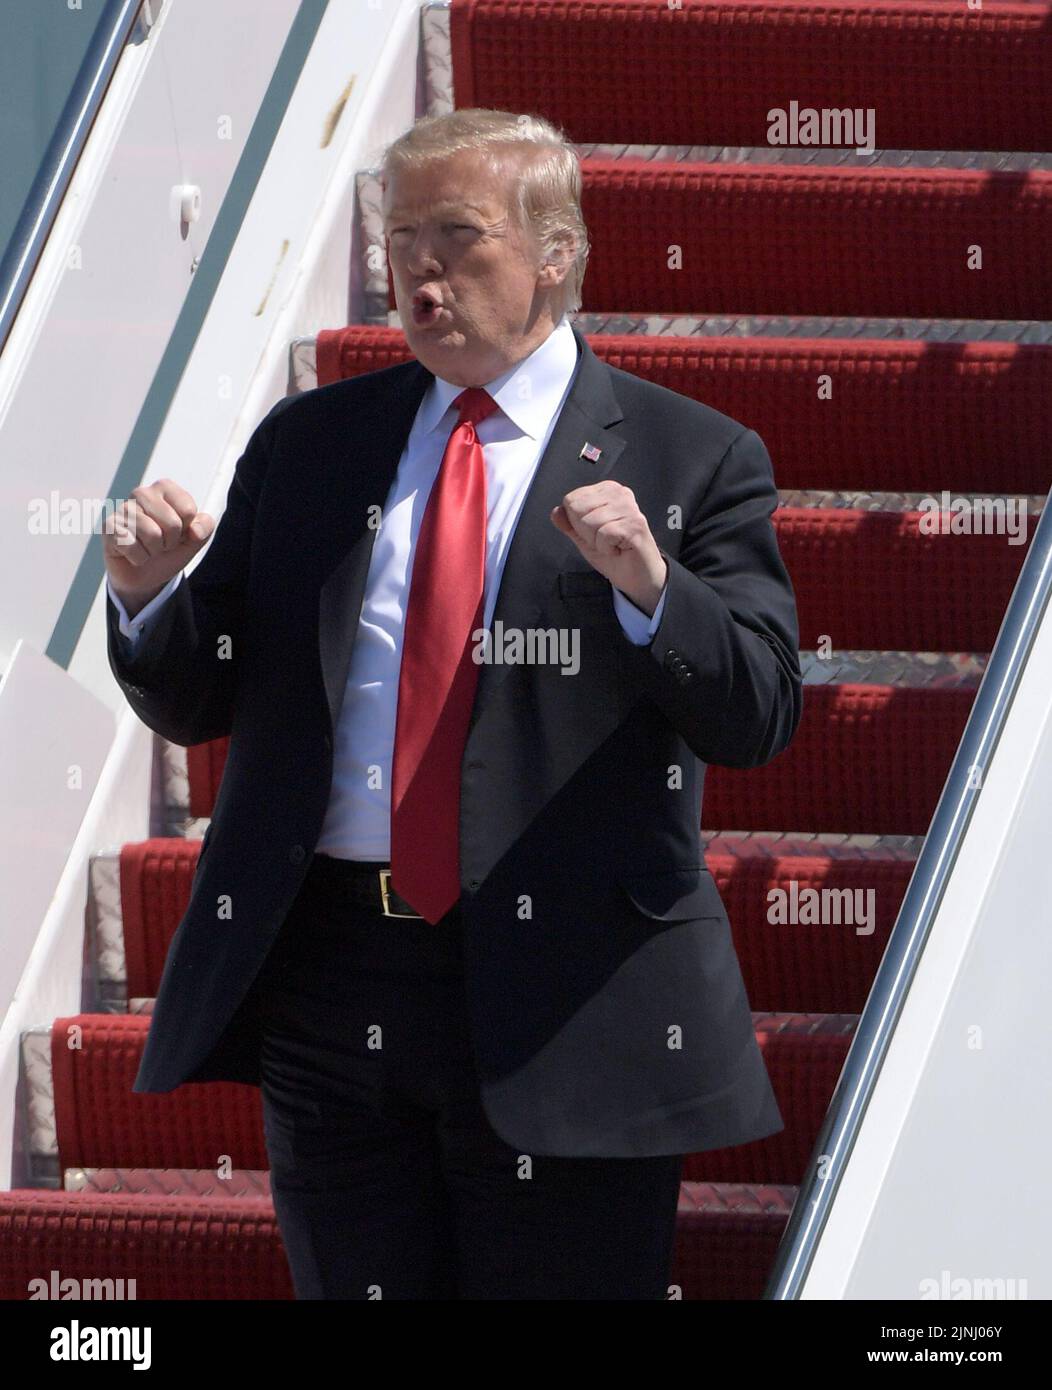 WEST PALM BEACH, FL - 22. MÄRZ: US-Präsident Donald Trump winkt und begrüßt Unterstützer, als er am 22. März 2019 in West Palm Beach, Florida, mit Air Force One am internationalen Flughafen von Palm Beach eintrifft, um Zeit im Mar-a-Lago Resort zu verbringen. Personen: Präsident Donald Trump Kredit: hoo-me.com/MediaPunch ***KEINE NY ZEITUNGEN*** Stockfoto